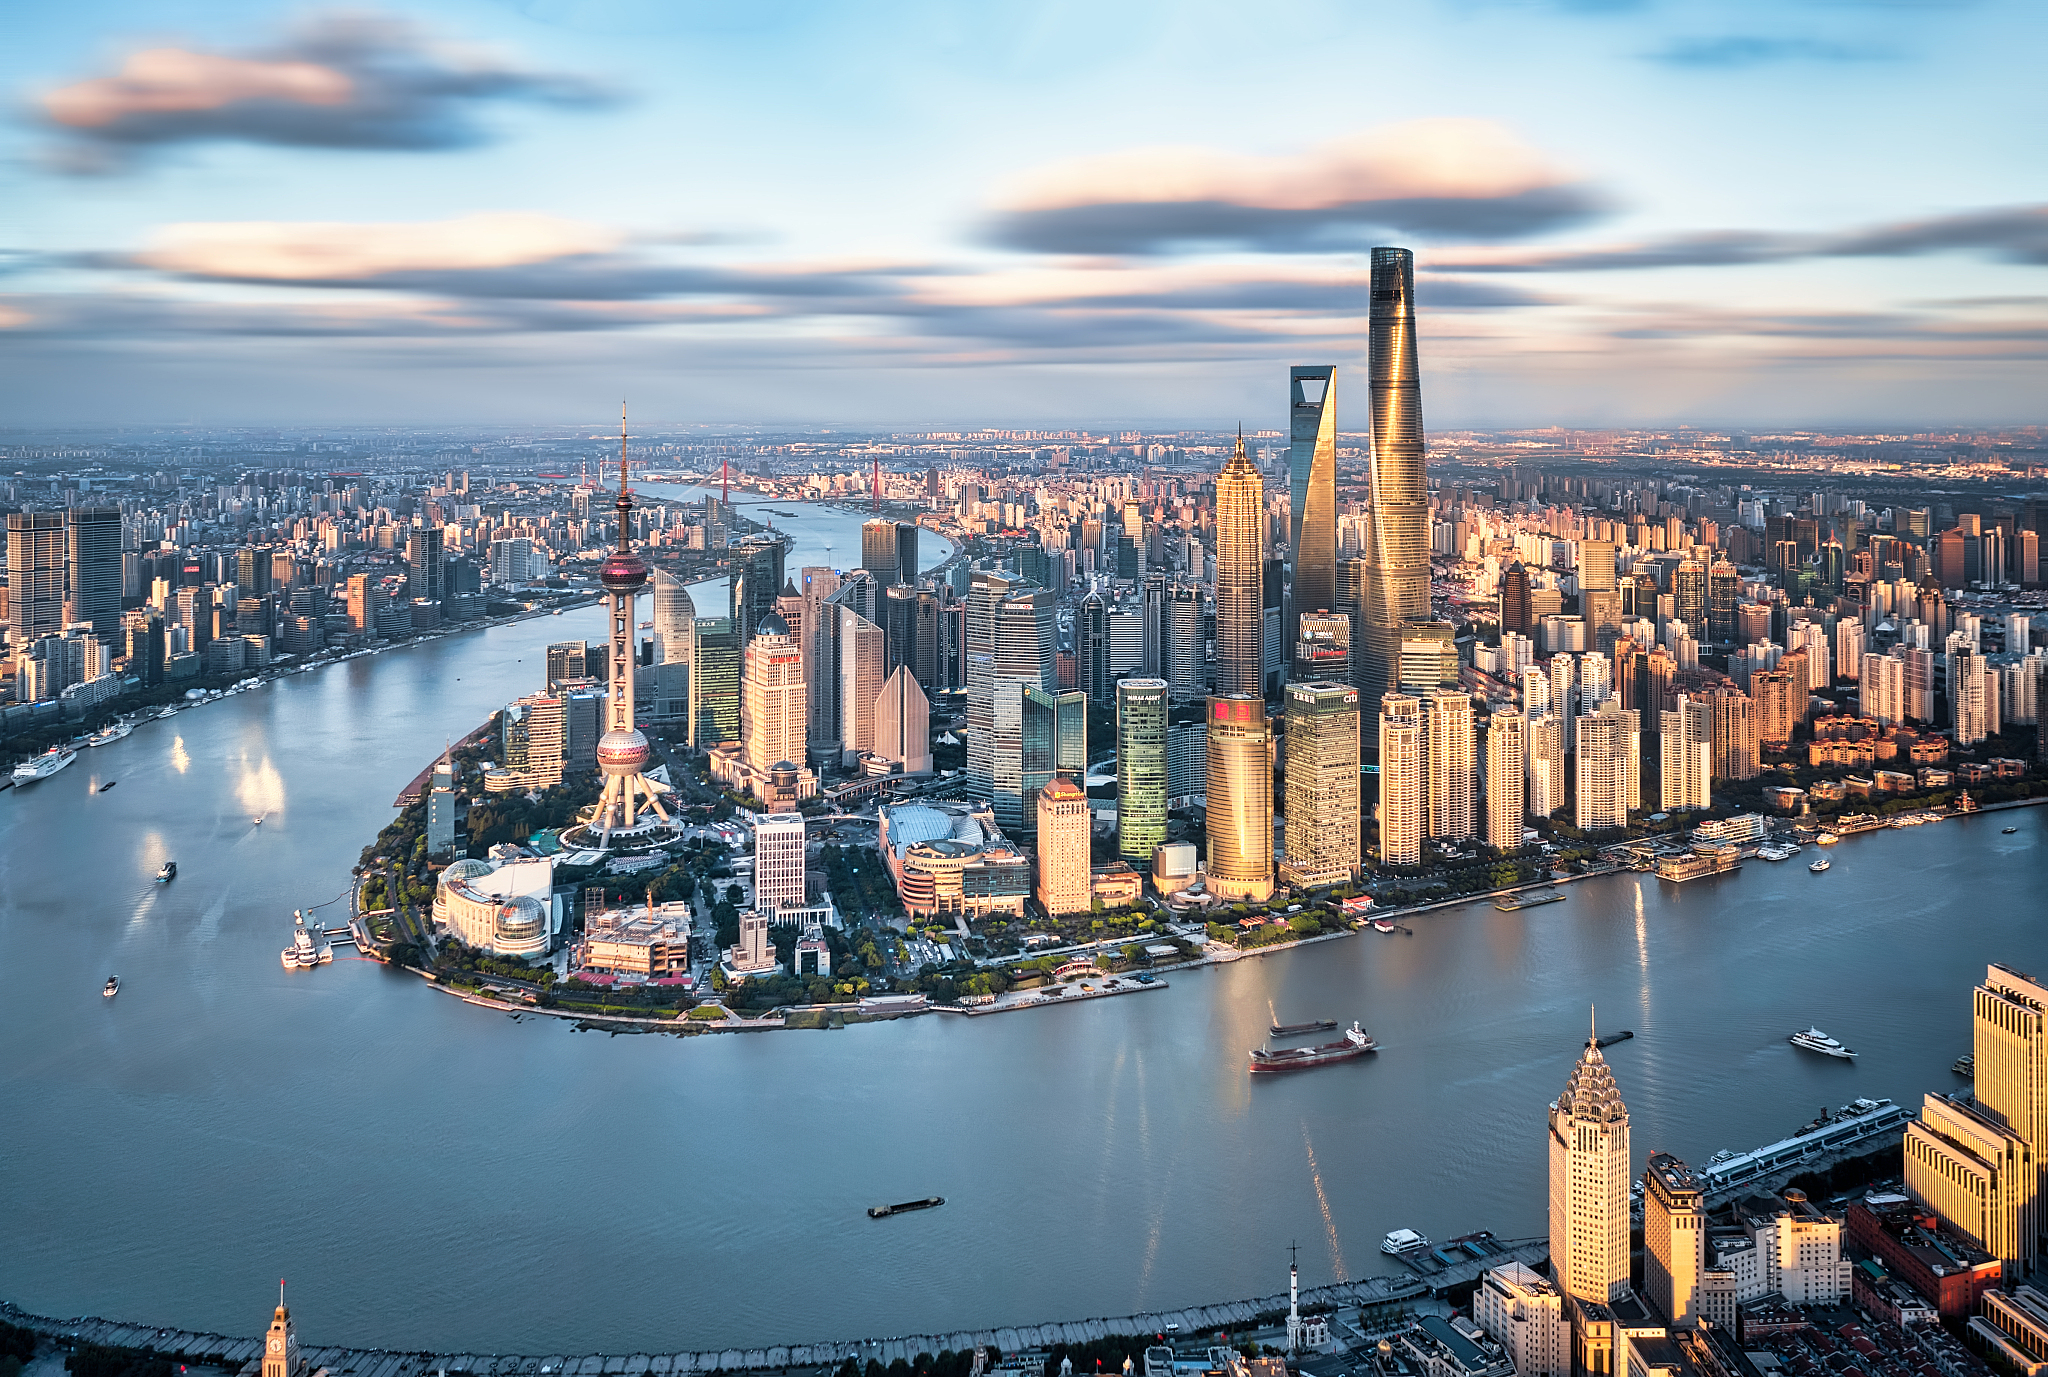 An aerial view of Shanghai. /CFP 